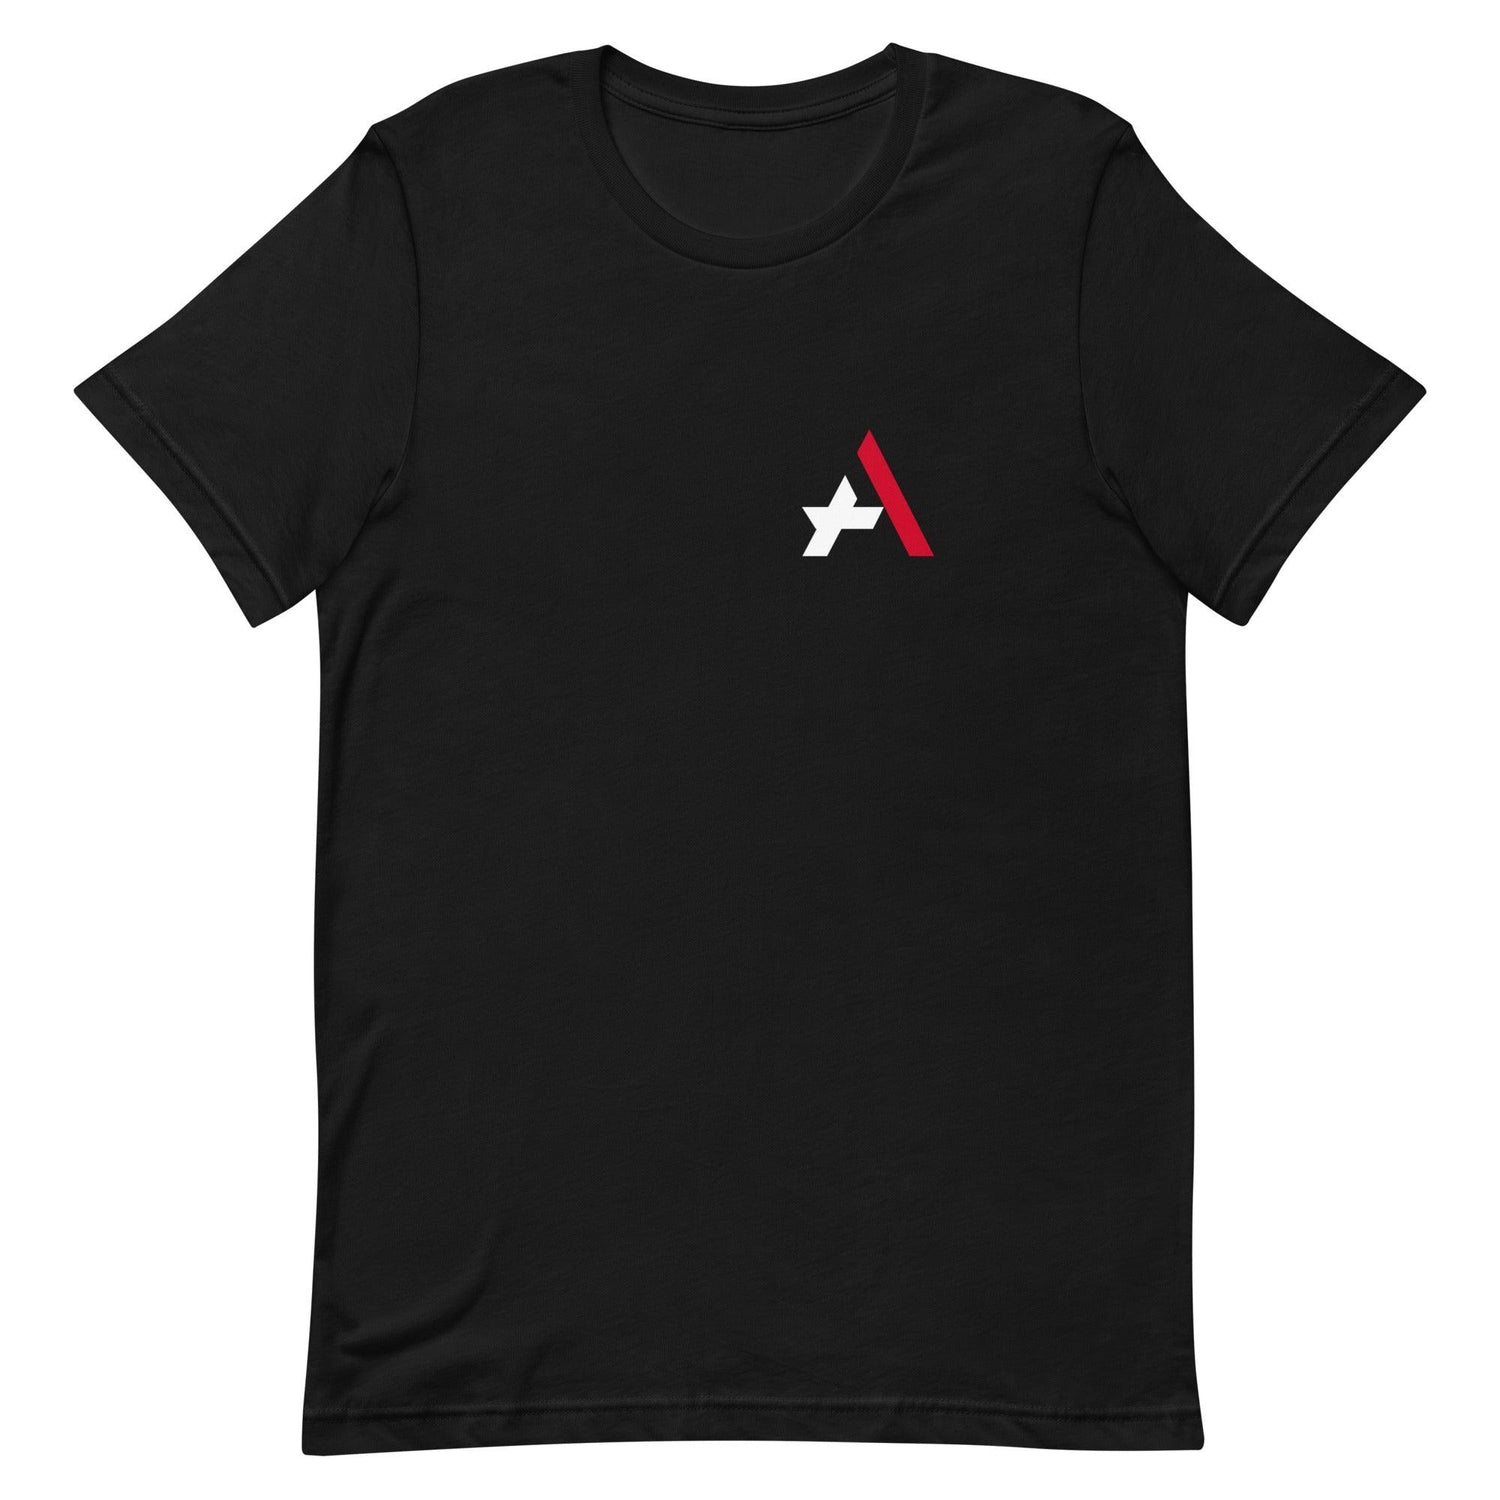 Tyler Ahearn “TA” t-shirt - Fan Arch